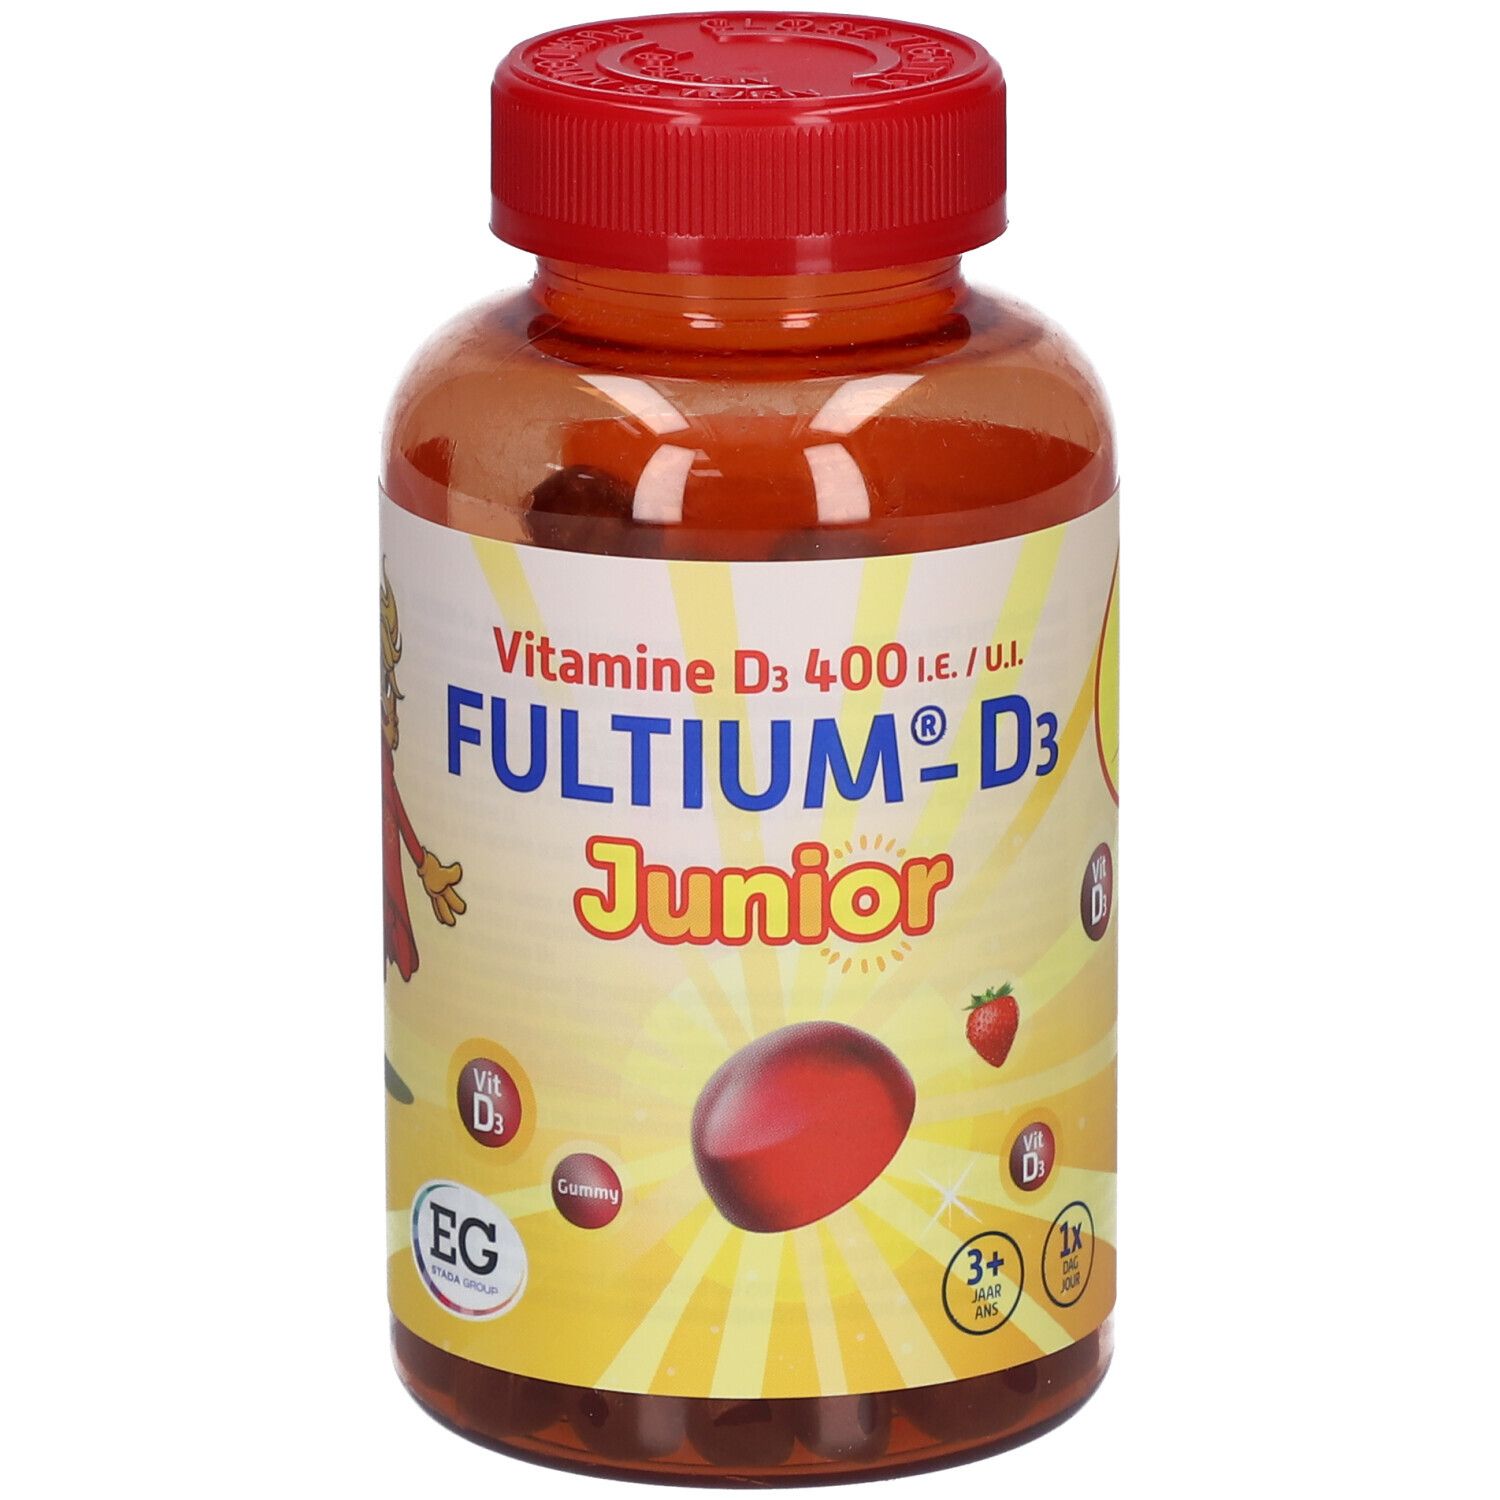 Fultium®-D3 Junior